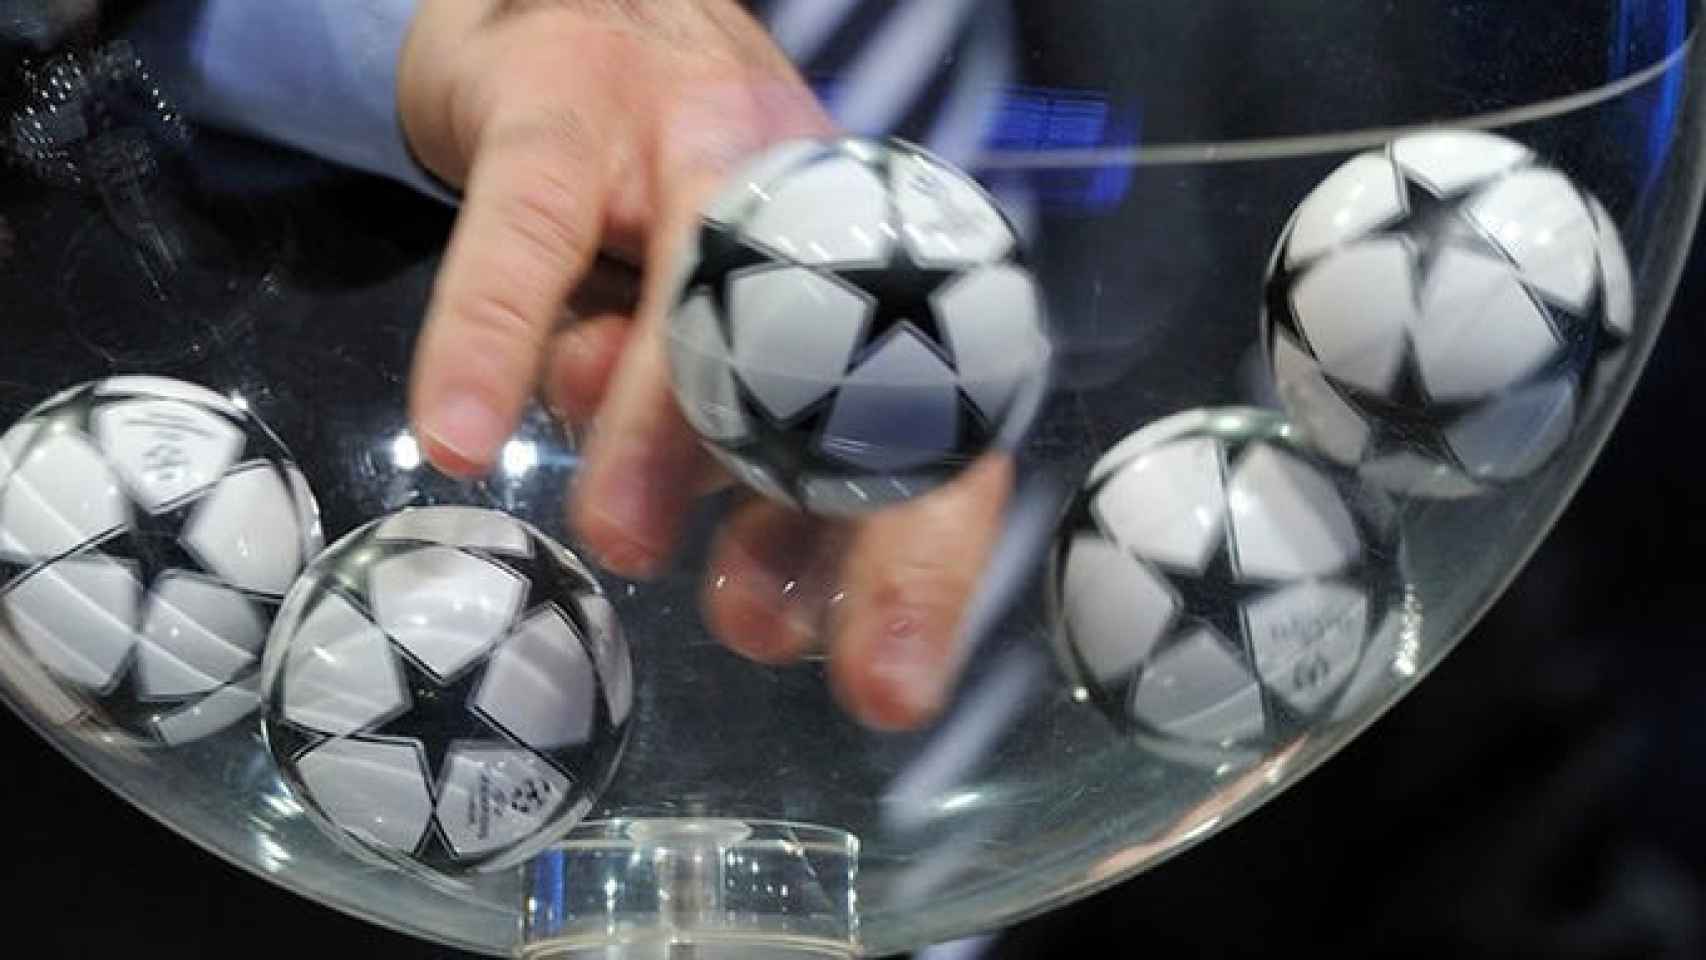 Bolas de Champions League.